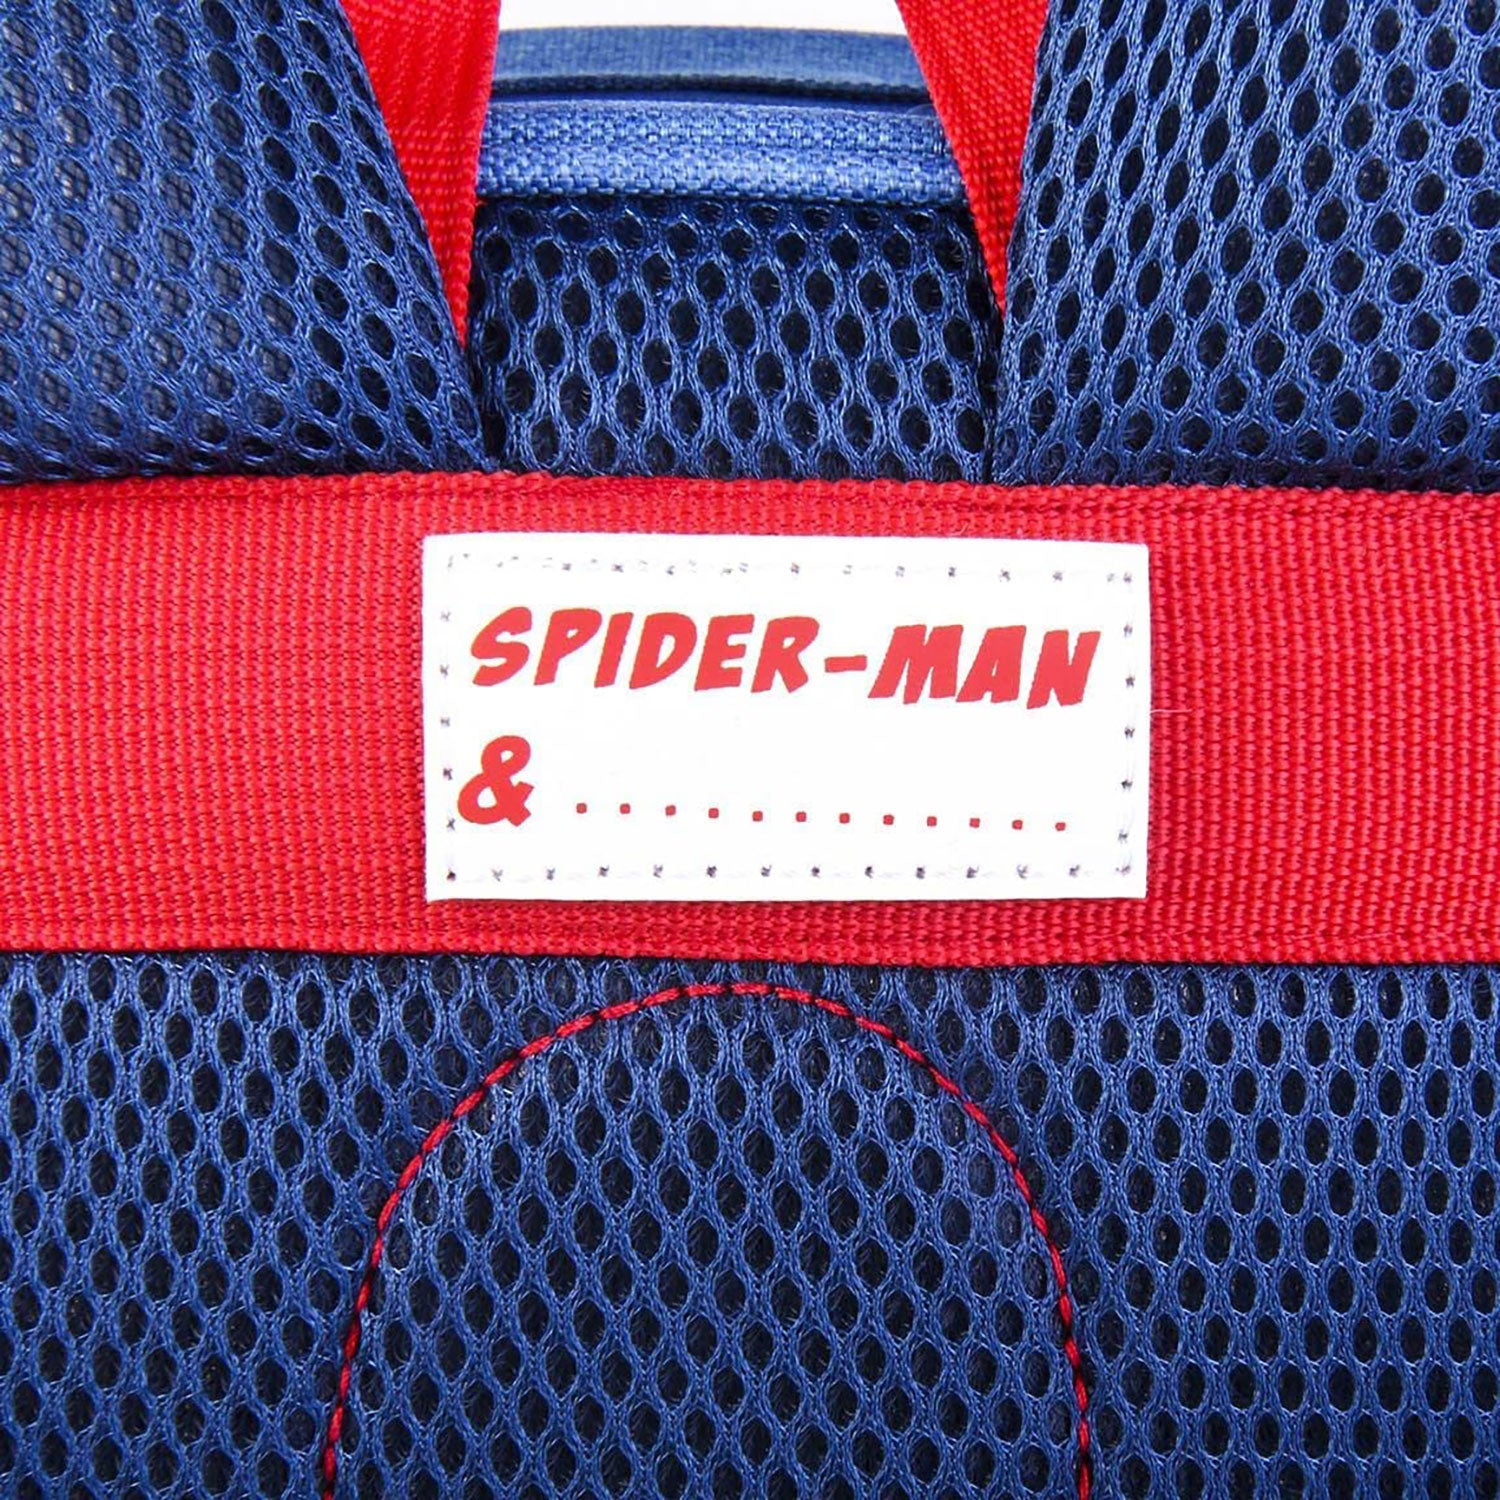 Zaino Marvel Spiderman zainetto ufficiale con bretelle bambino scuola asilo 5543